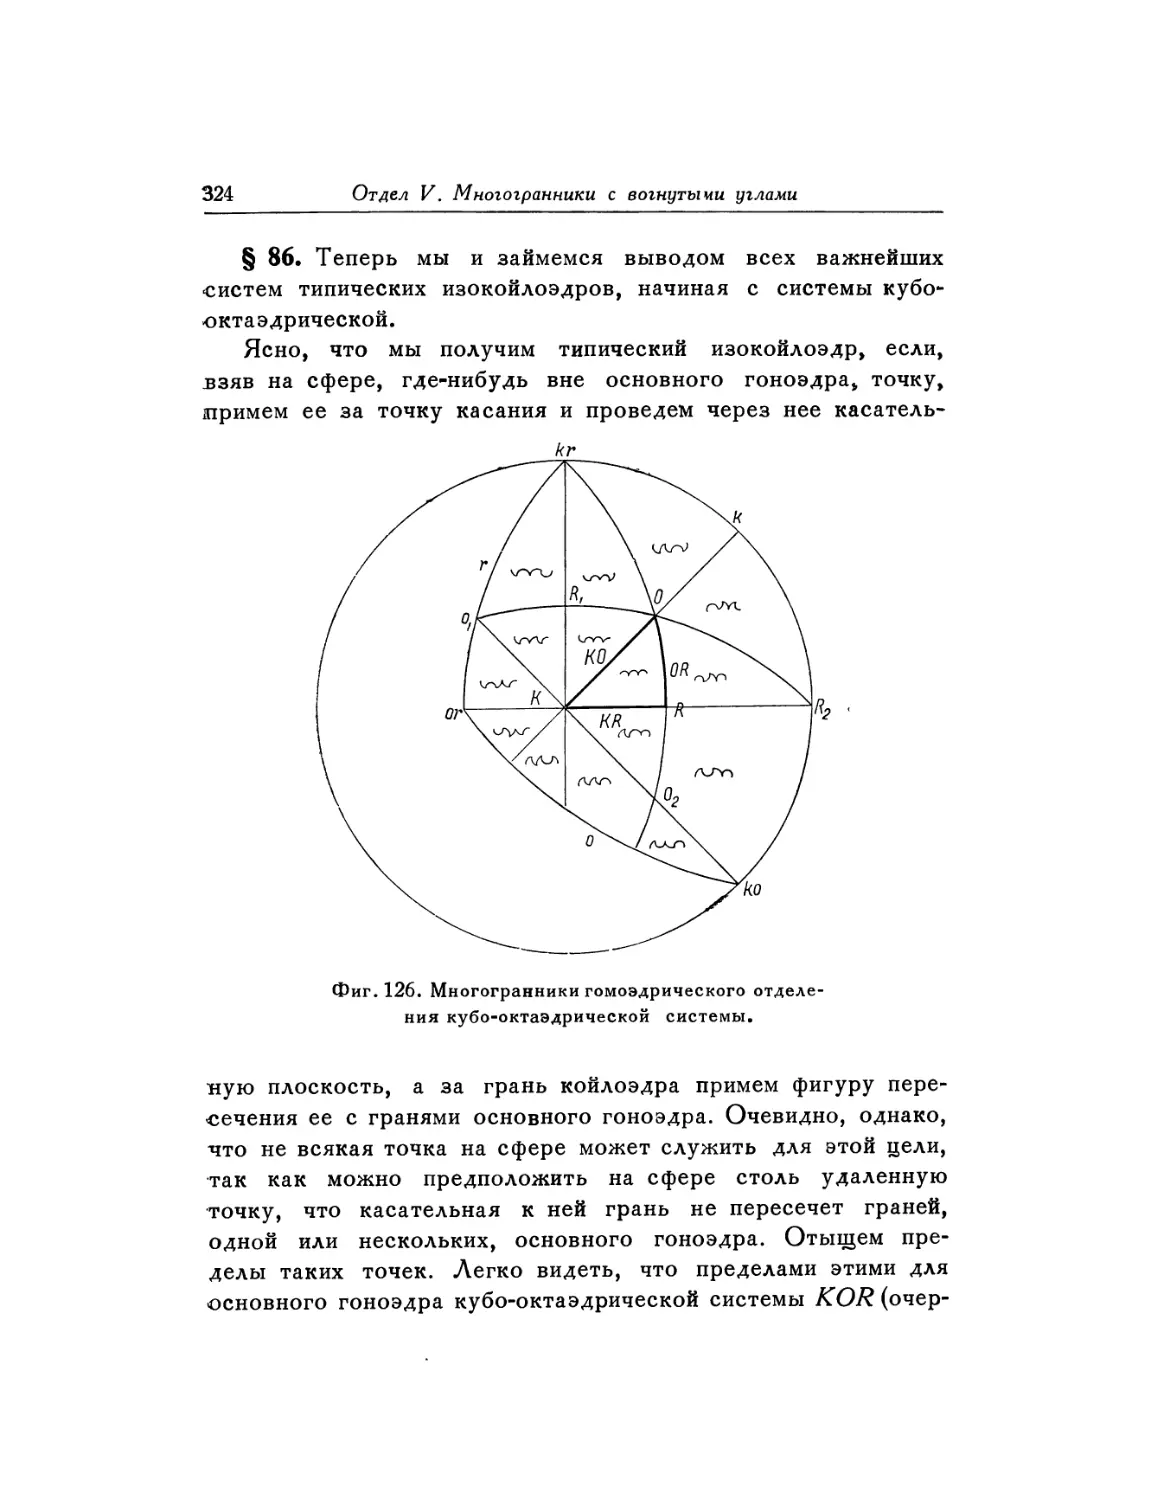 § 86. Типические изокойлоэдры гомоэдрического отделения кубо-октаэдрической системы